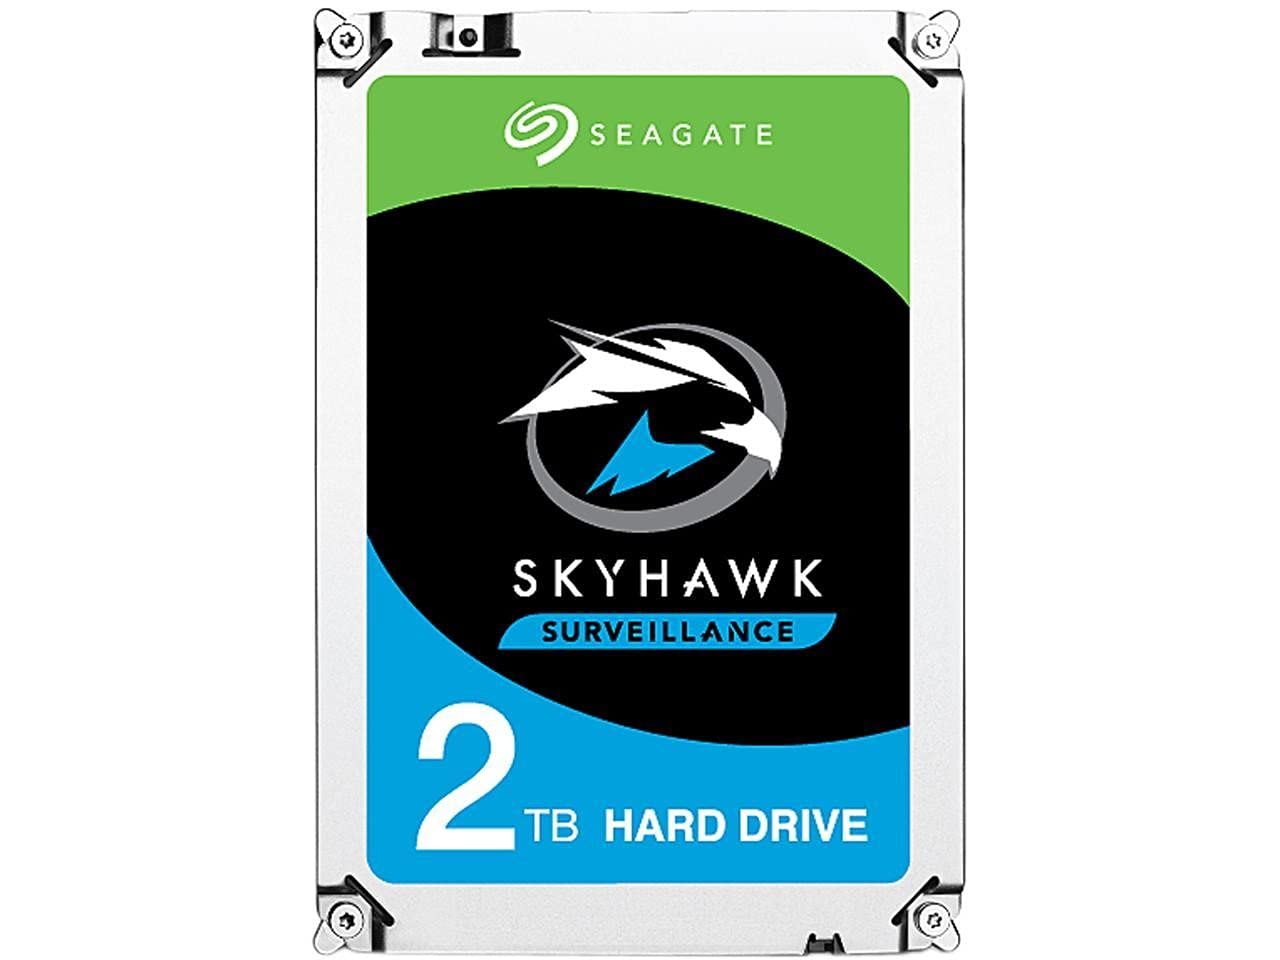 Seagate SkyHawk Surveillance 2TB Hard Drive